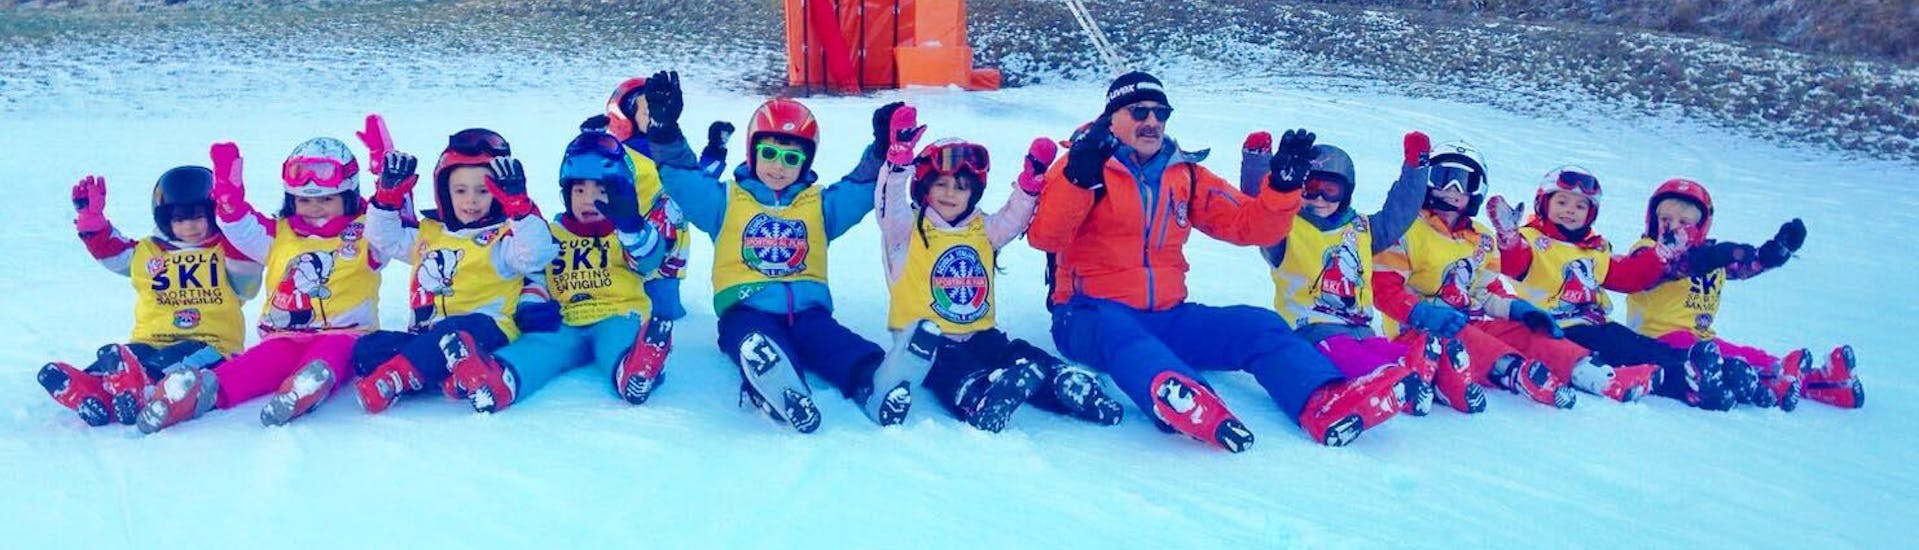 Cours de ski Enfants dès 3 ans pour Tous niveaux.